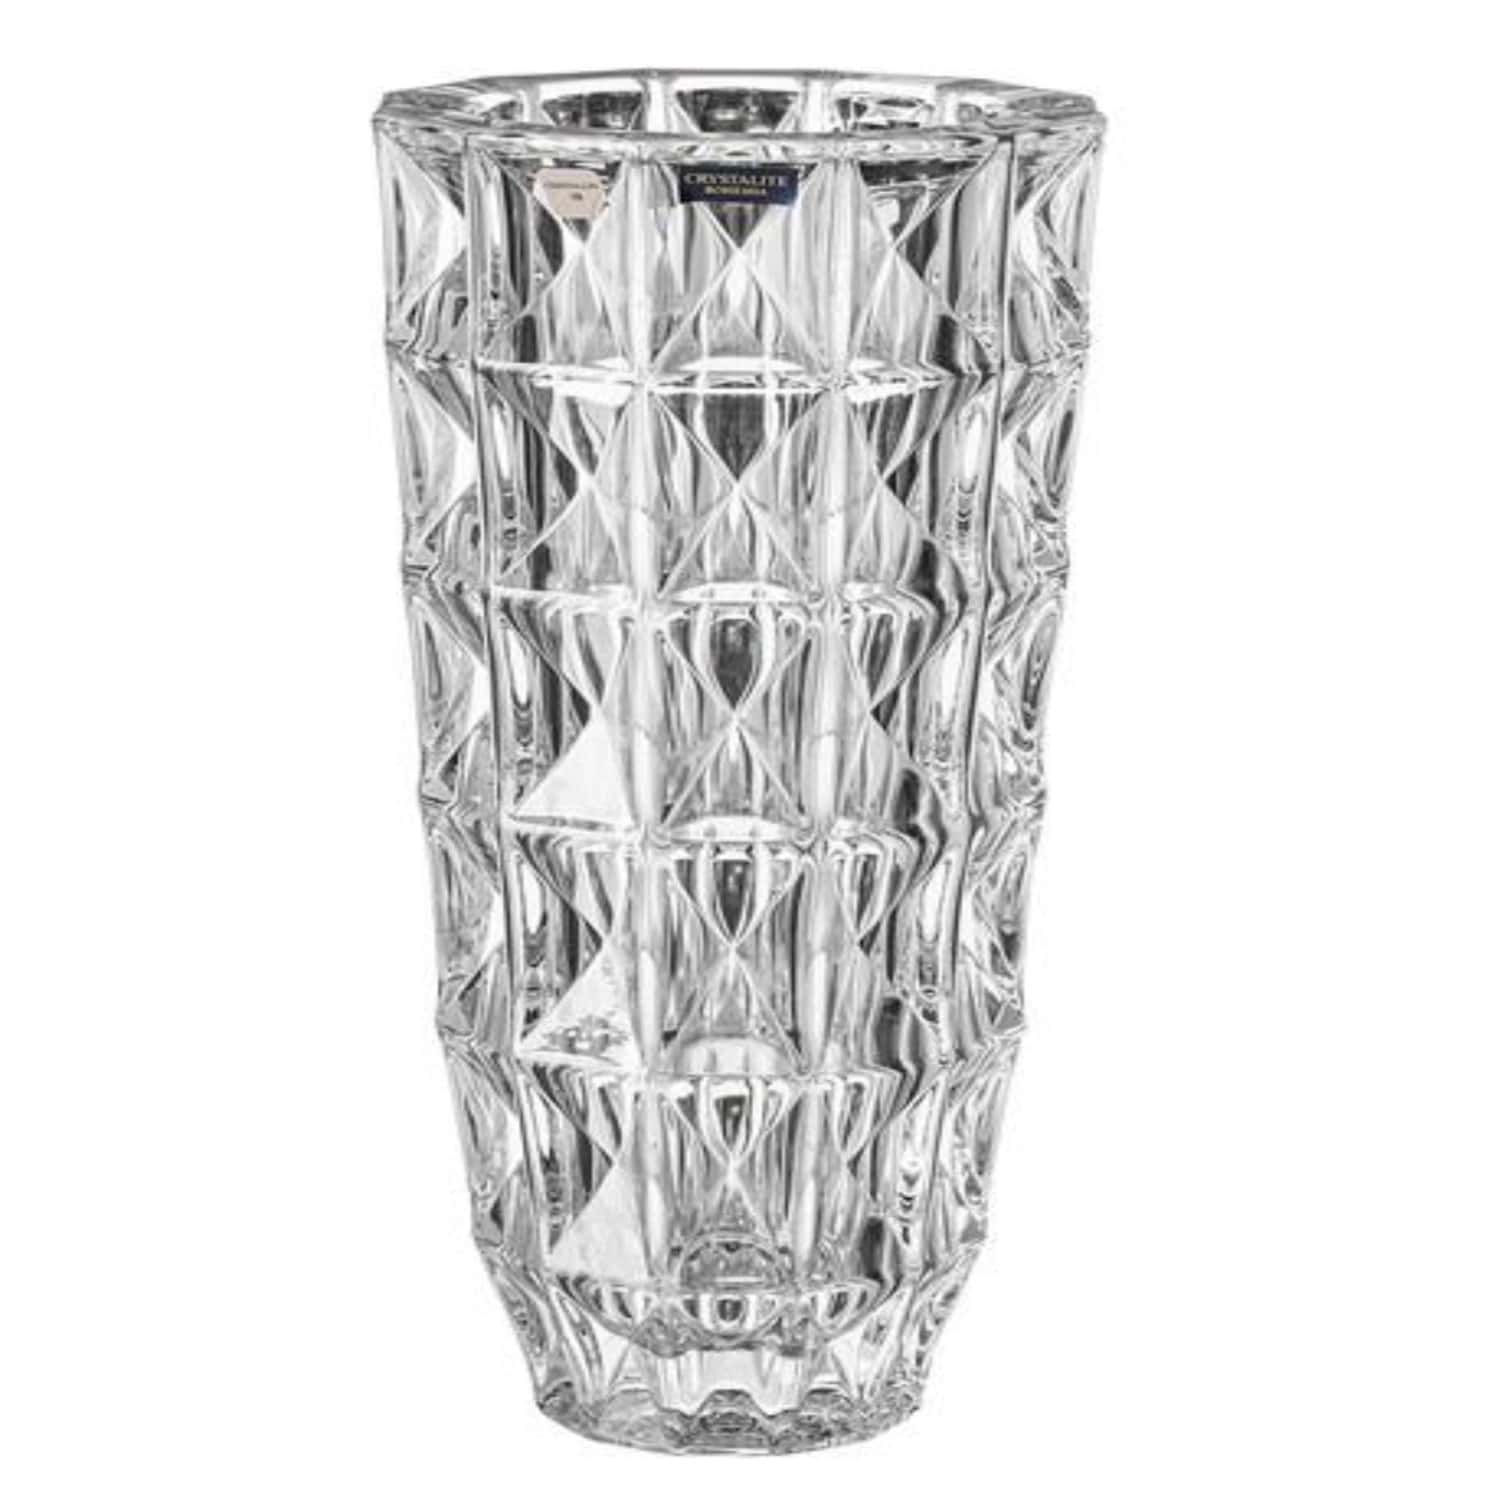 Bohemia Crystal - Cylindrical Crystal Vase - Diamond Design - 33 cm - 270006855